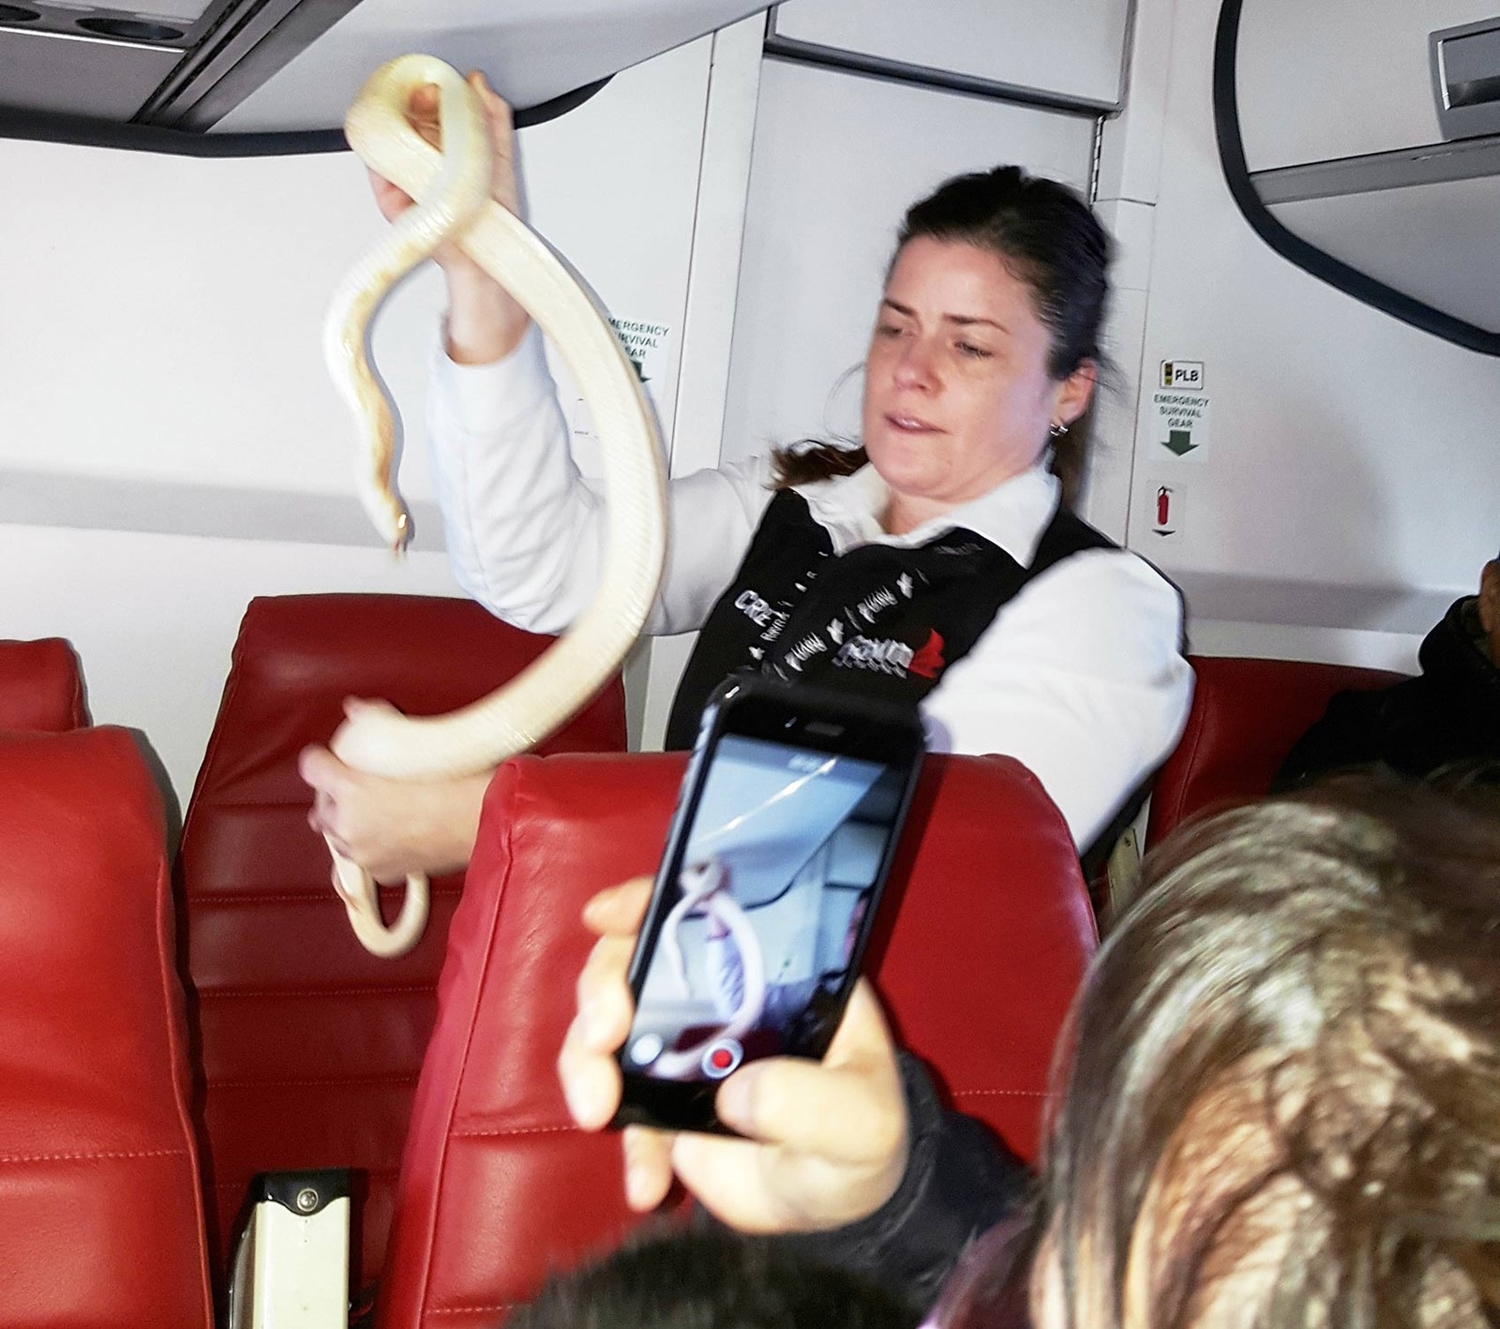 Segundo empresa aérea Ravn Alaska, passageiro violou regra ao embarcar com a cobra no avião